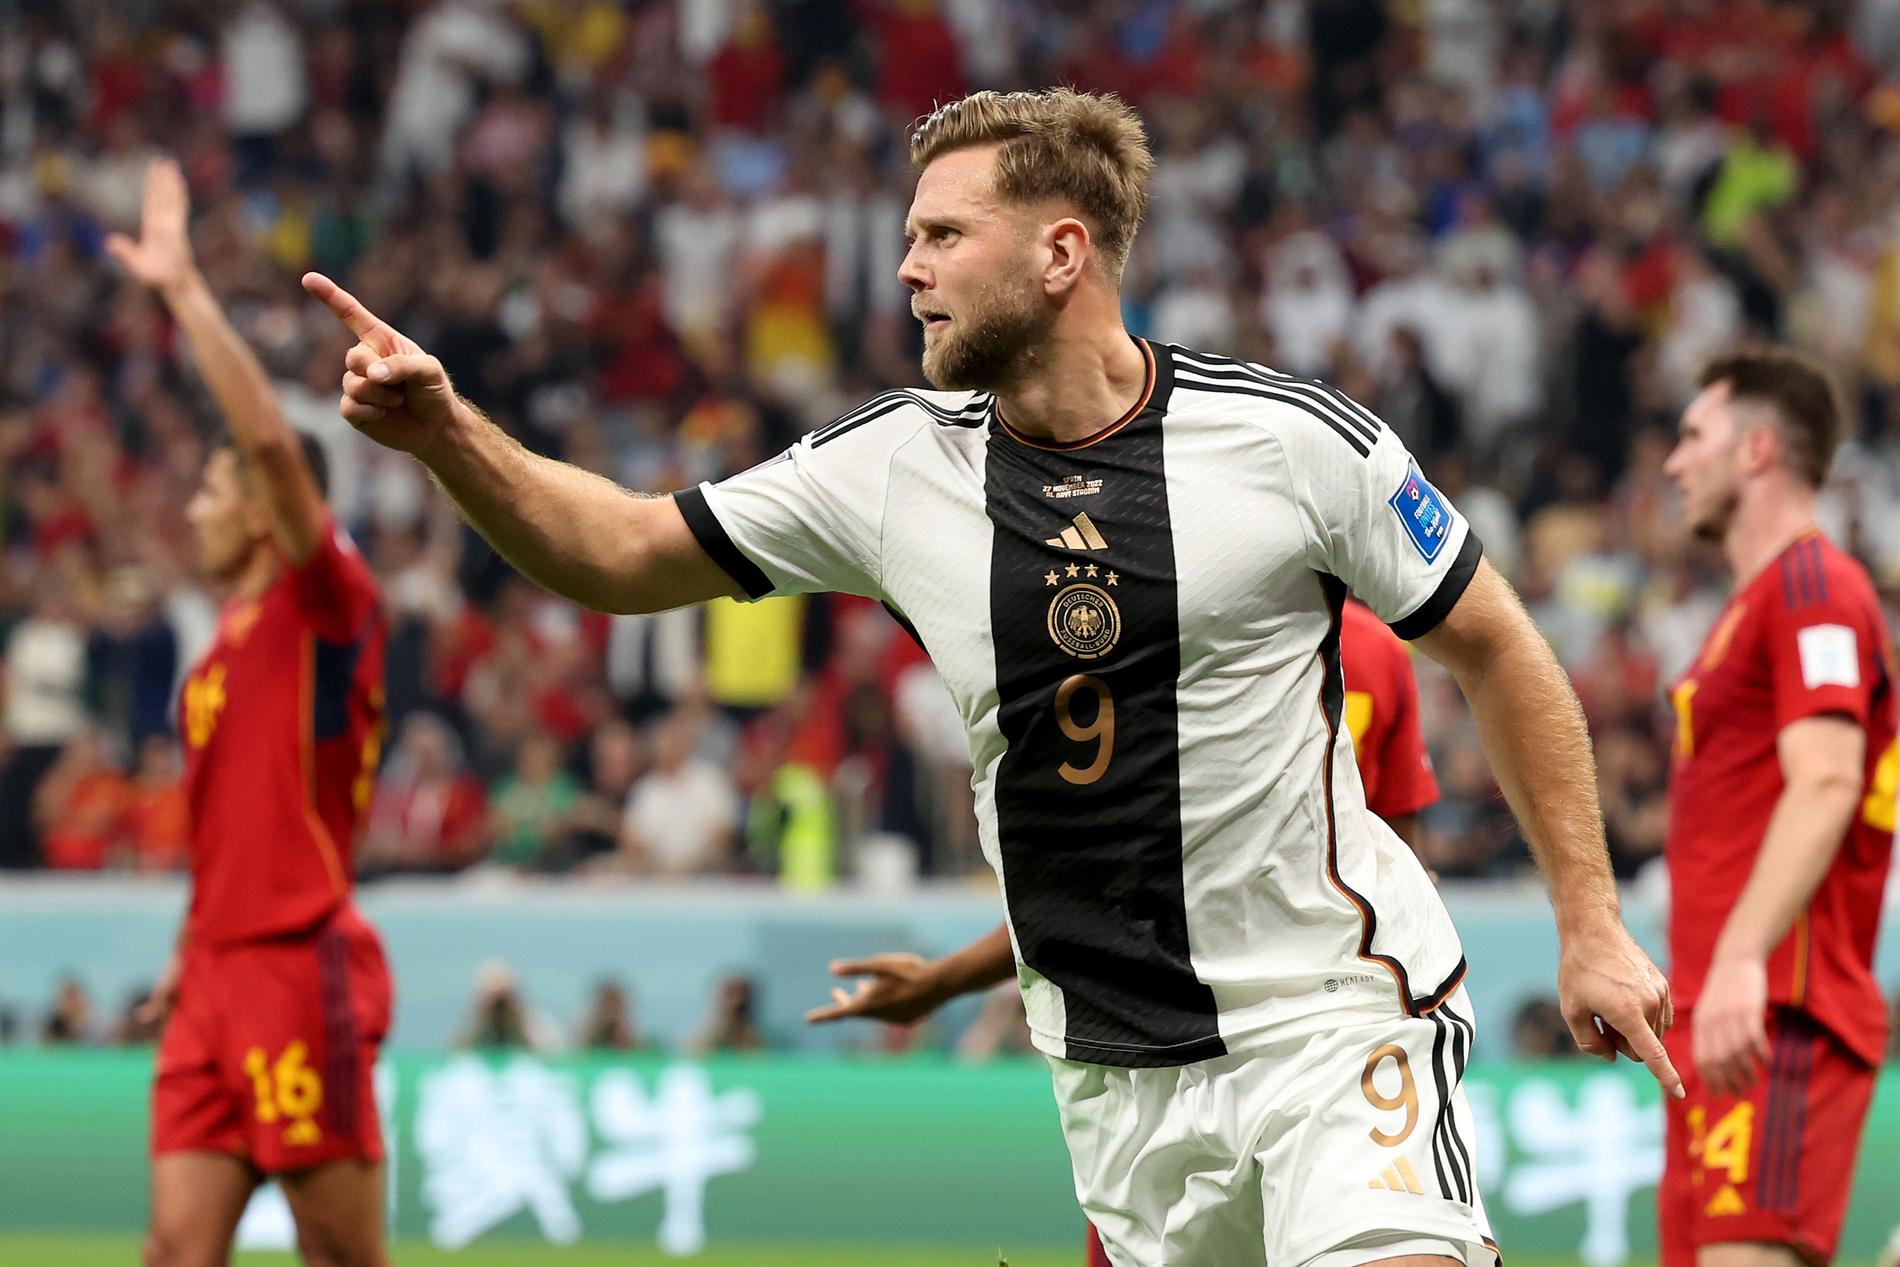 Füllkrug frälste Tyskland och räddade landets VM-hopp. Nu möter de Costa Rica om en plats i åttondelsfinalerna i VM.